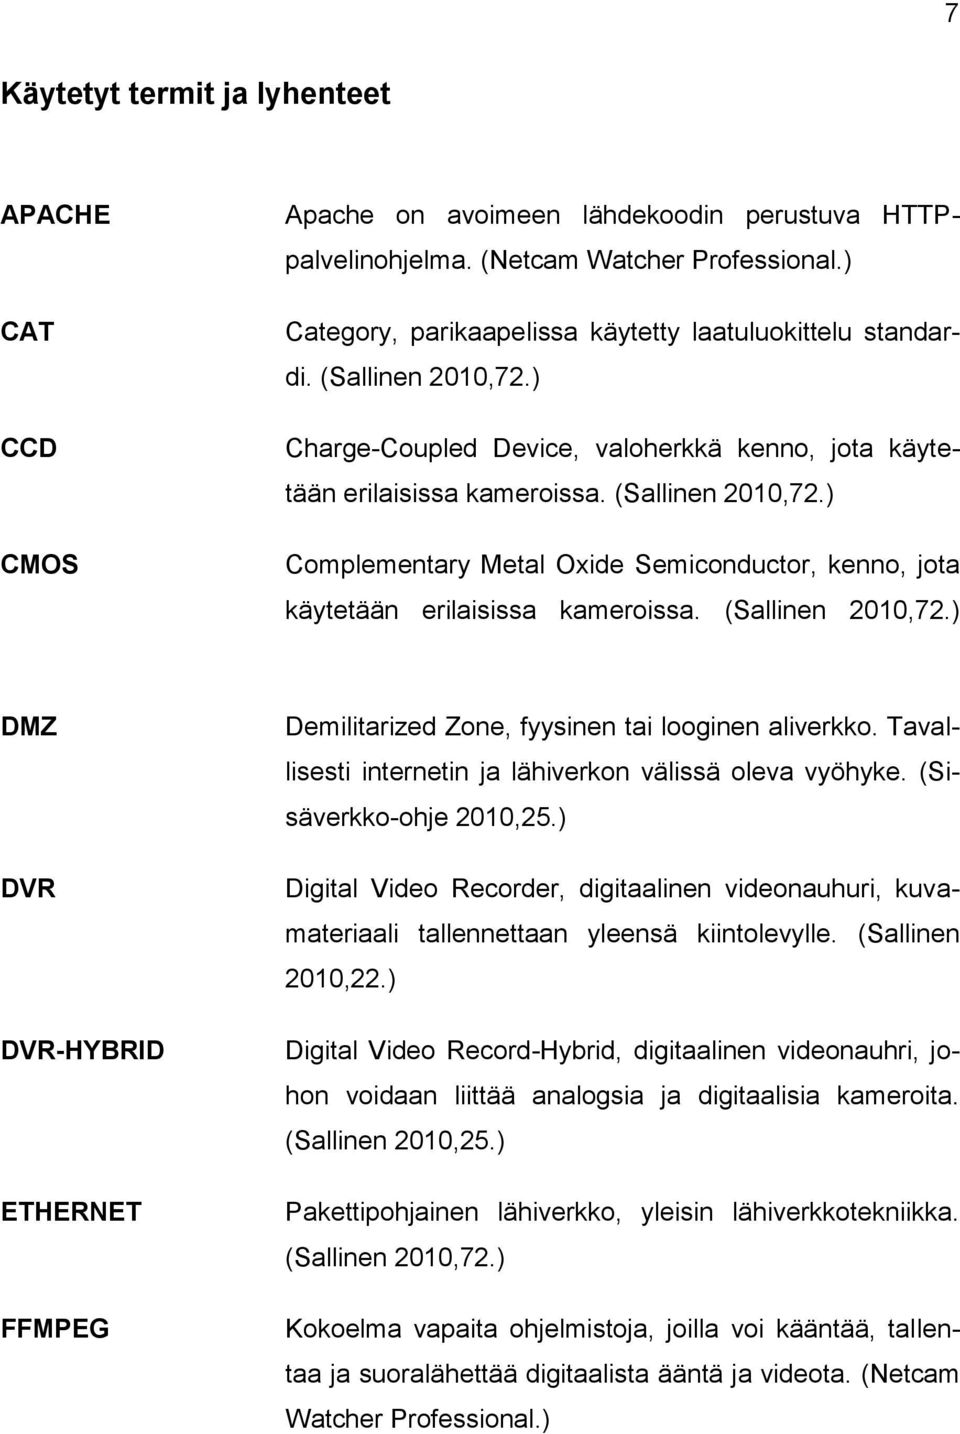 (Sallinen 2010,72.) DMZ DVR DVR-HYBRID ETHERNET FFMPEG Demilitarized Zone, fyysinen tai looginen aliverkko. Tavallisesti internetin ja lähiverkon välissä oleva vyöhyke. (Sisäverkko-ohje 2010,25.